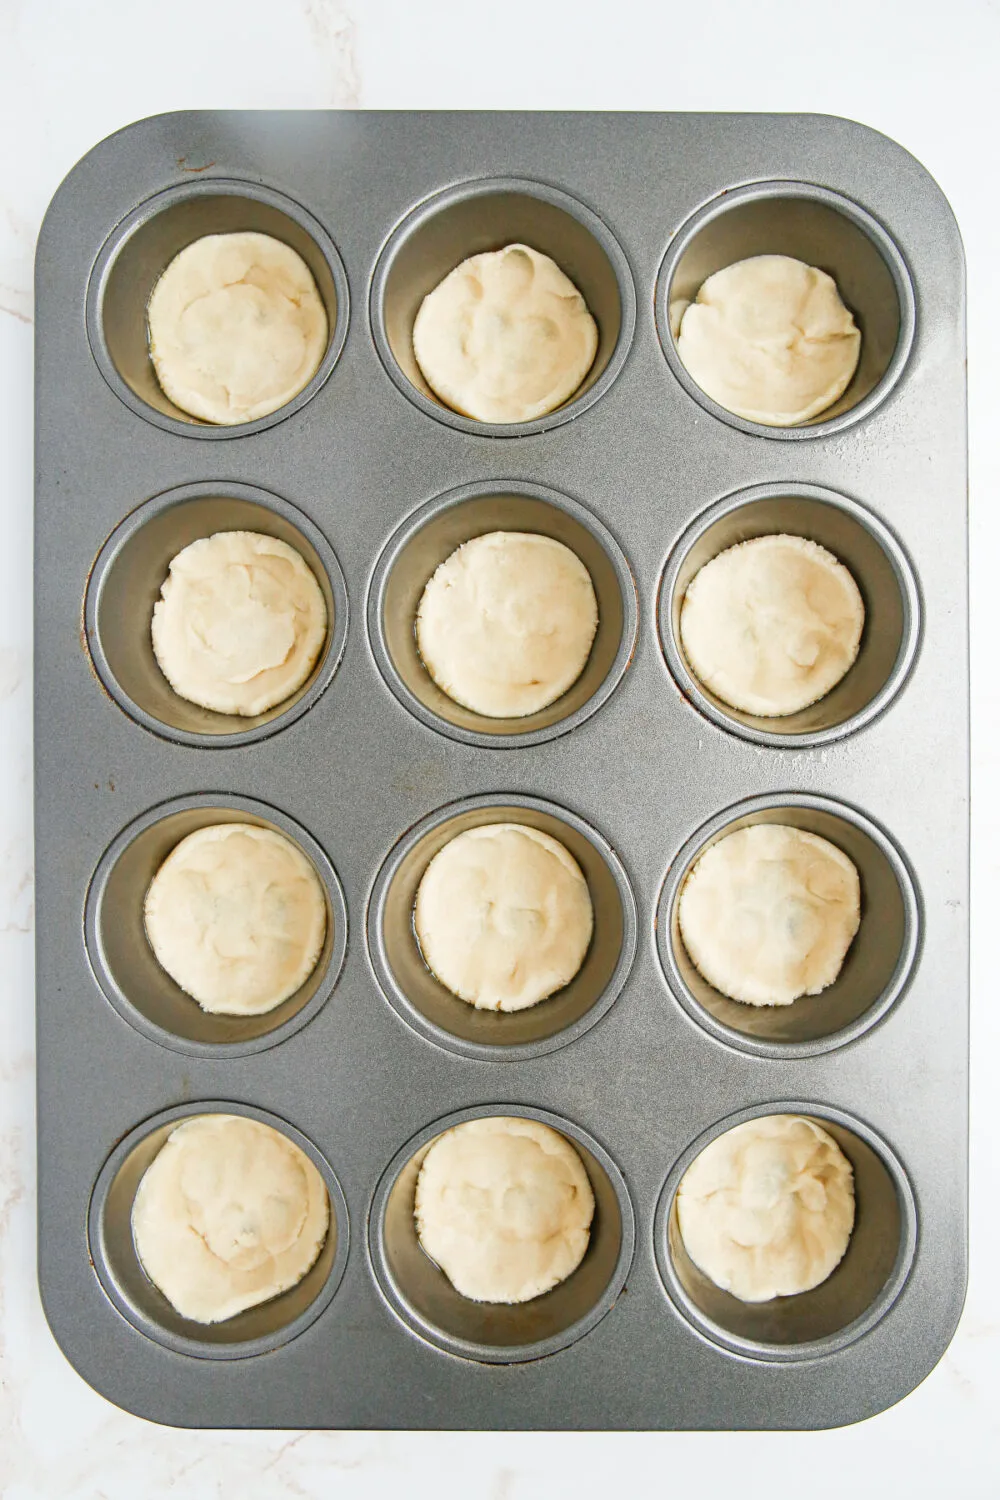 Sugar cookie dough in muffin tins. 